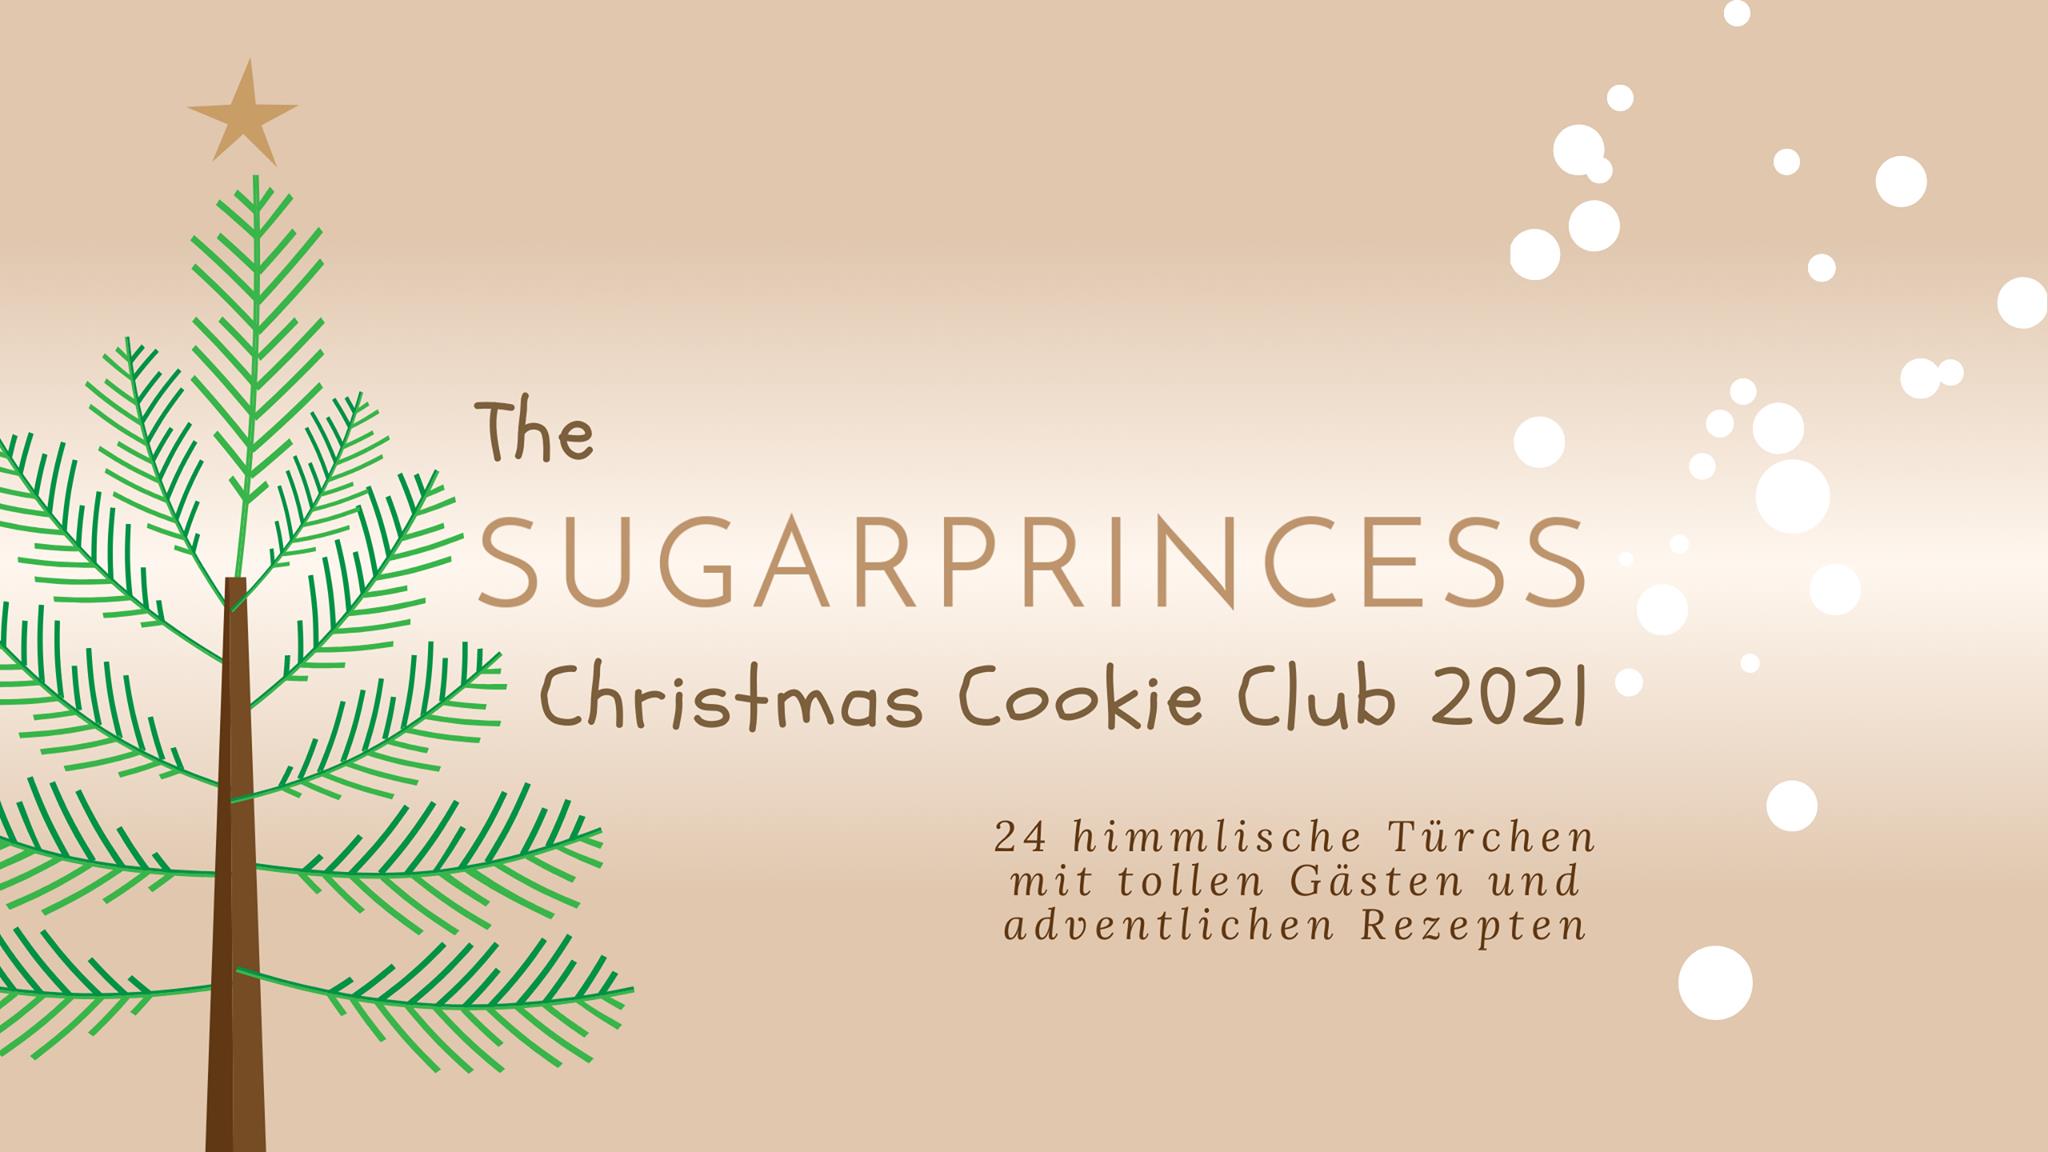 The Sugarprincess Christmas Cookie Club 2021